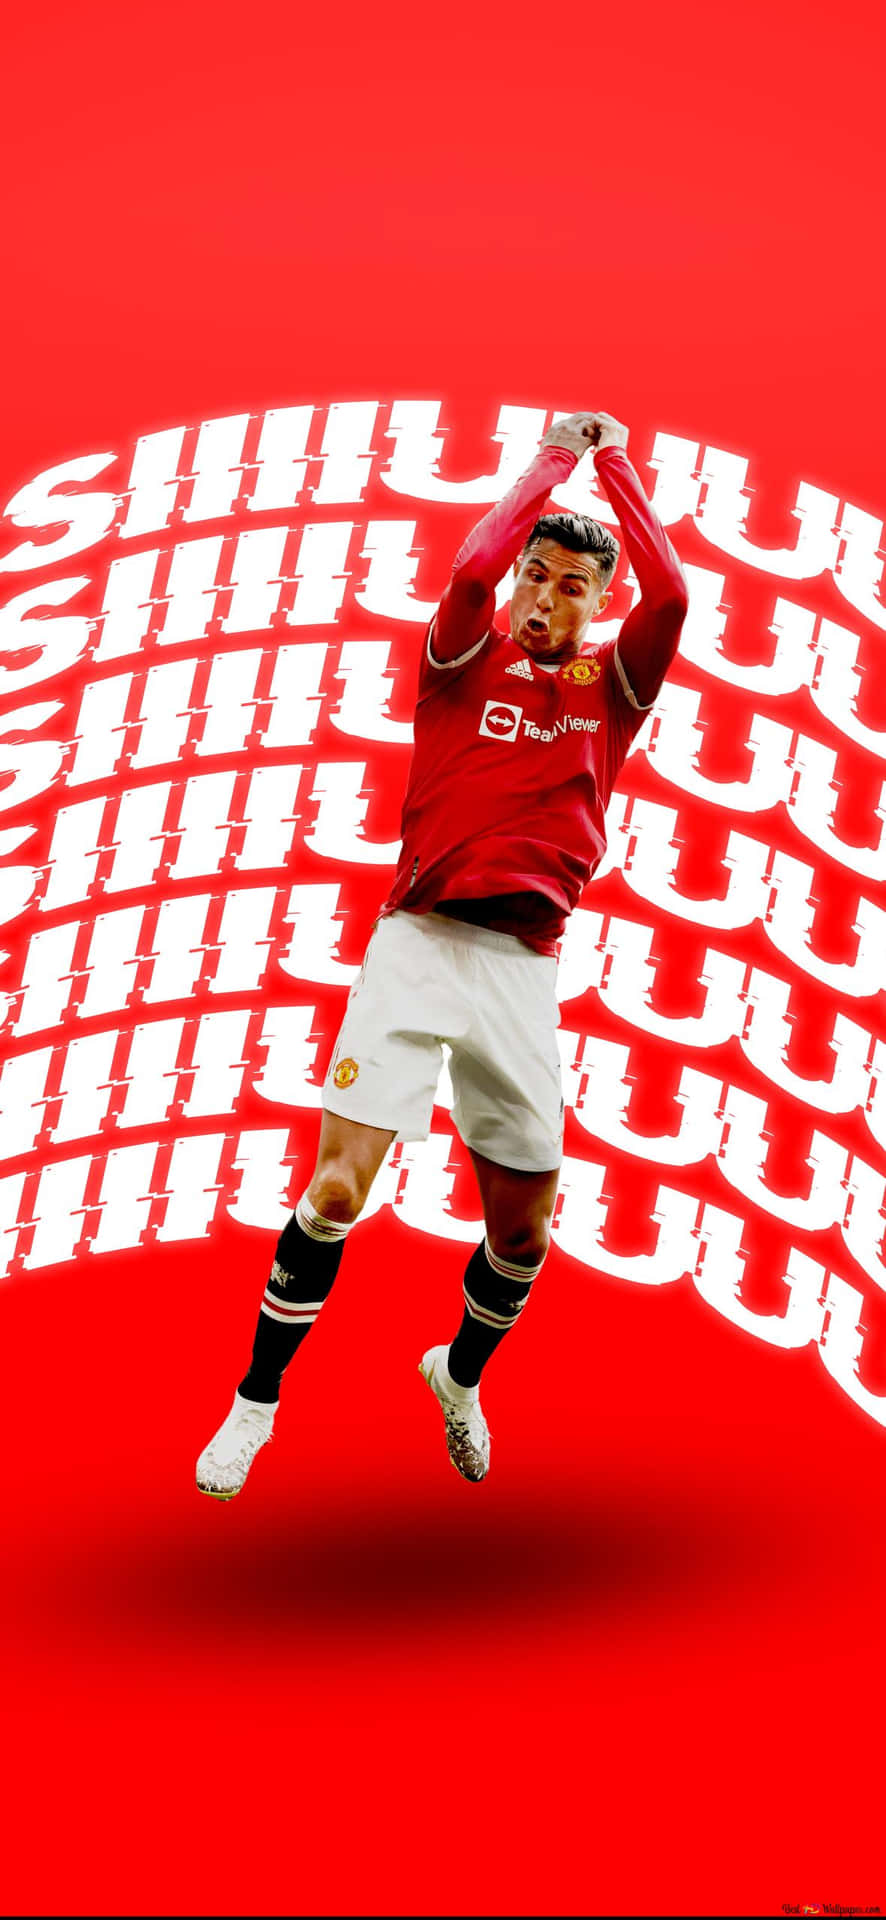 Cristiano Ronaldo Manchester United Team Wallpaper